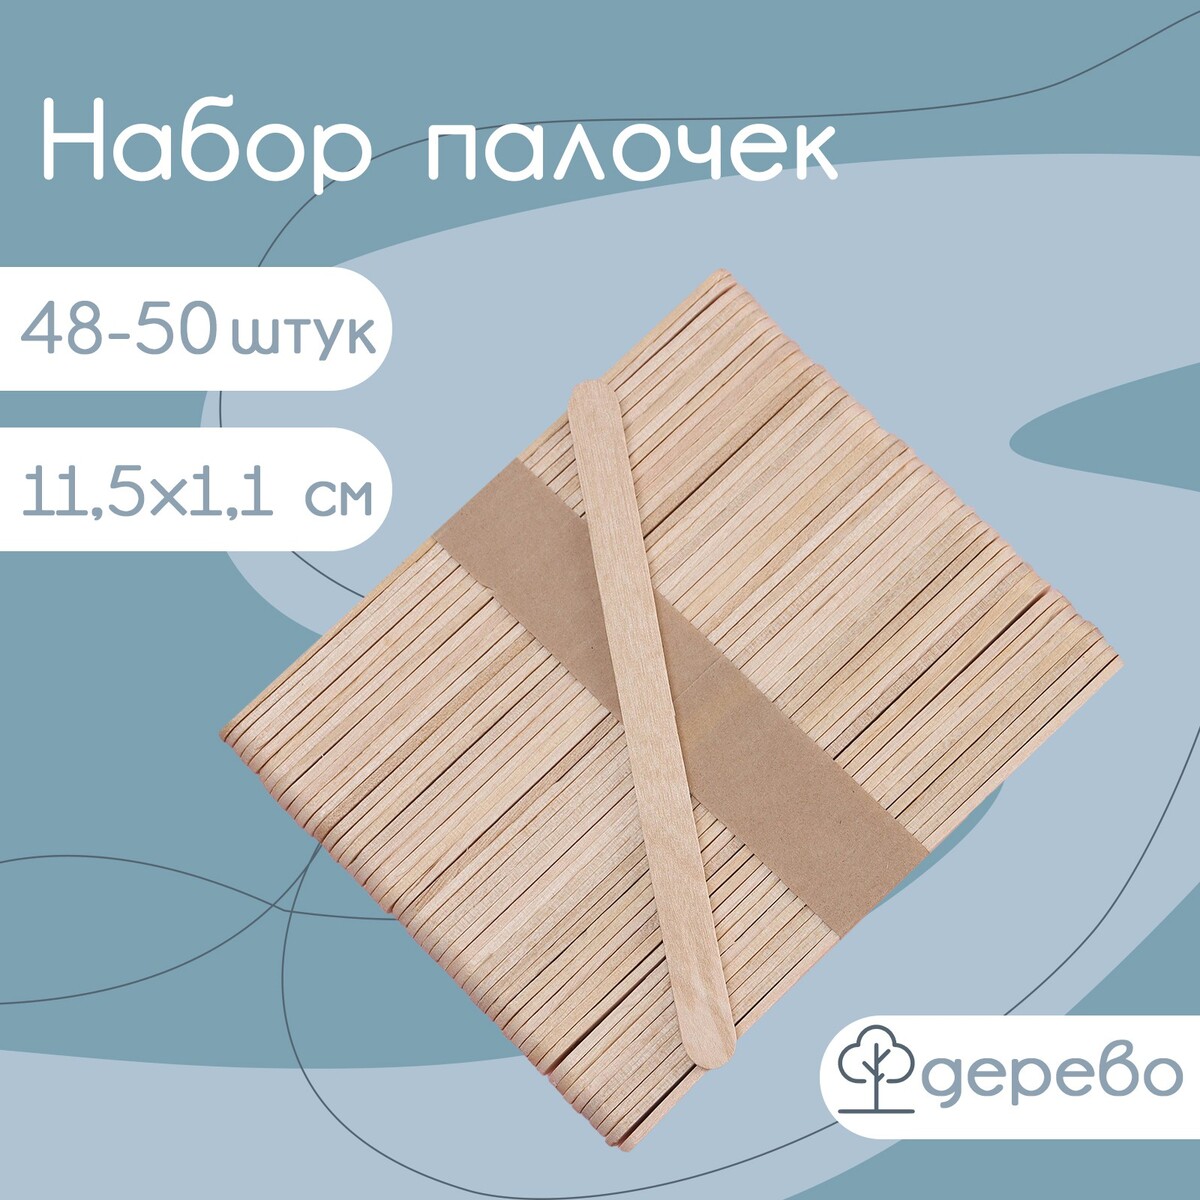 Набор деревянных палочек для мороженого, 11,5×1,1 см, 48-50 шт сироп дэтринка